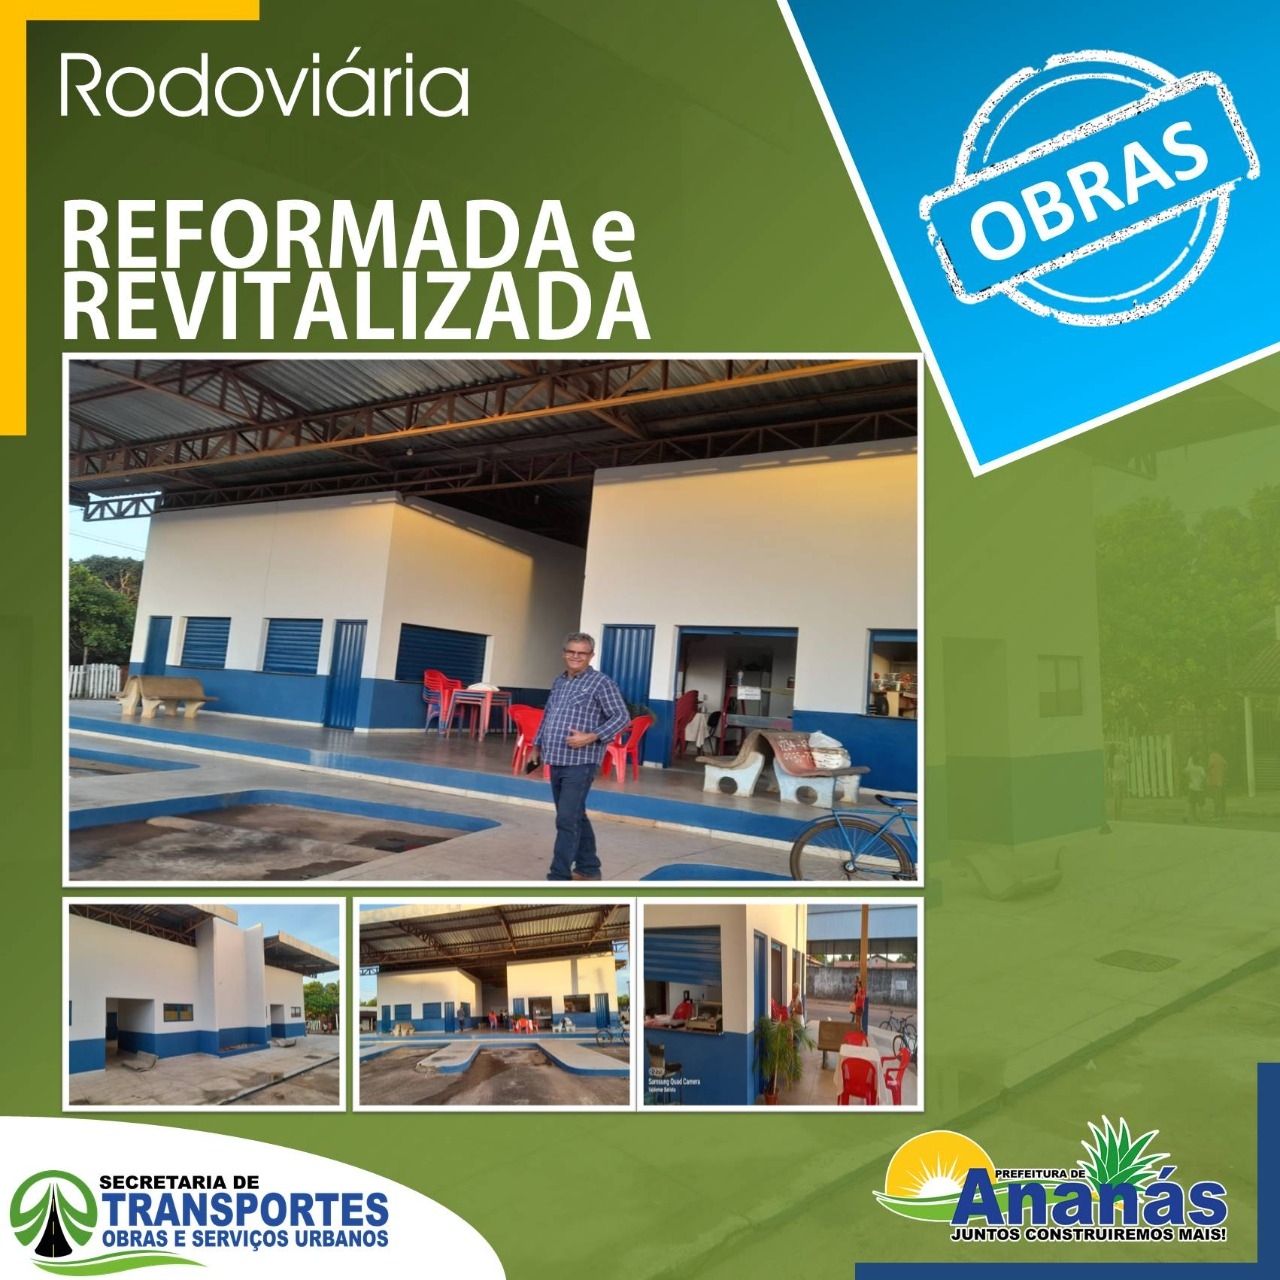 Depois de 15 anos, o prédio da rodoviária de Ananás passa por uma reforma completa.